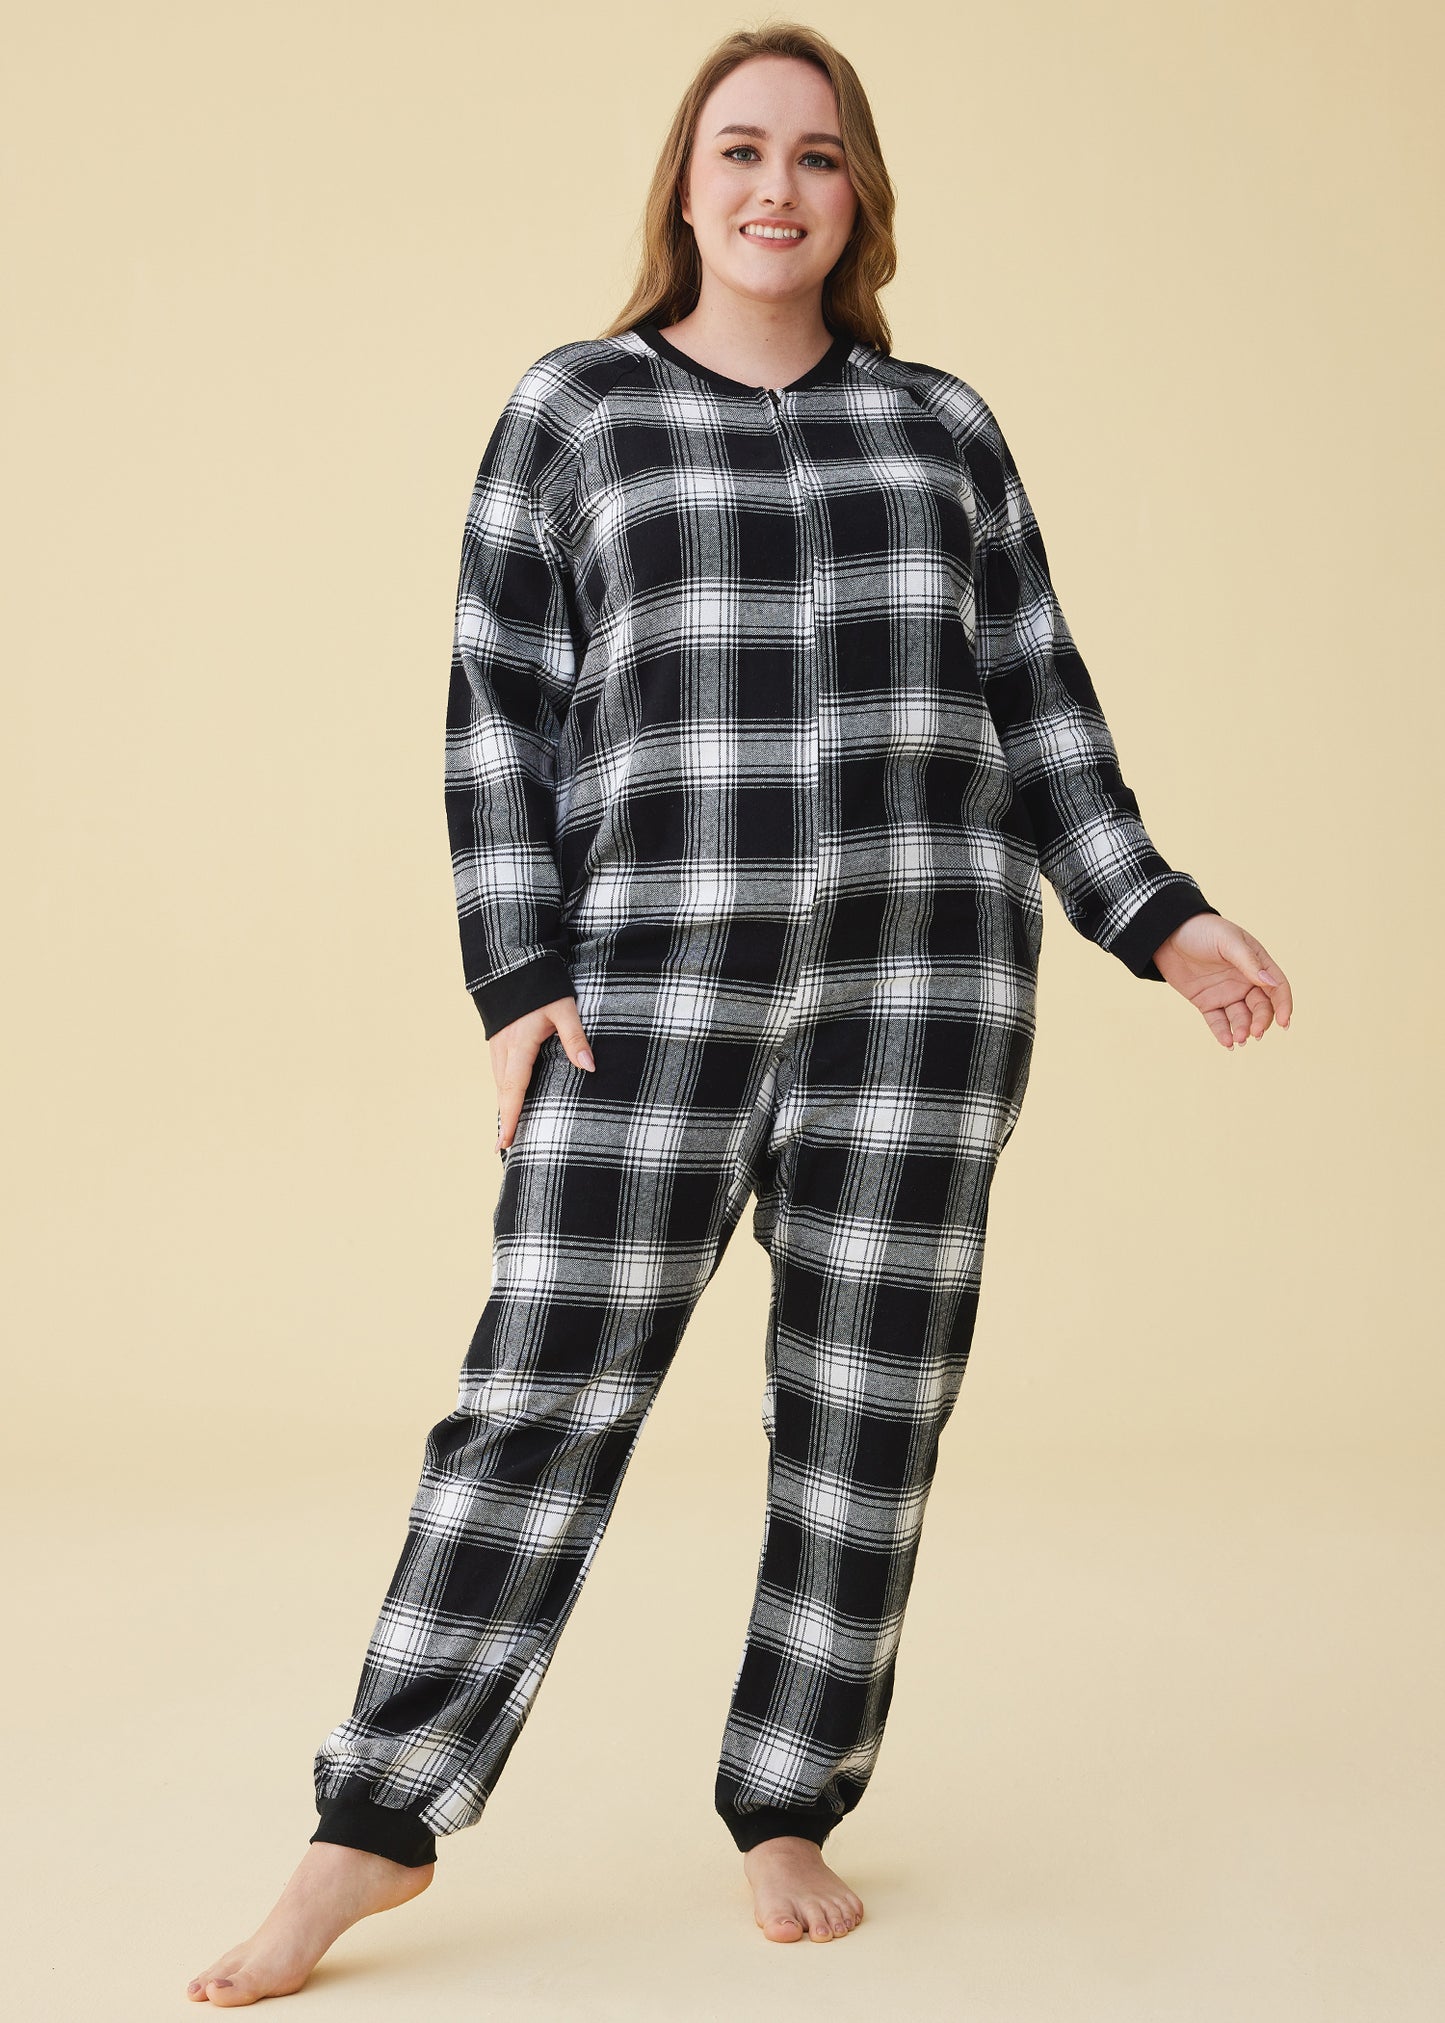 Women's Flannel Zipper Onesie Long Sleeves Pajama Jumpsuit